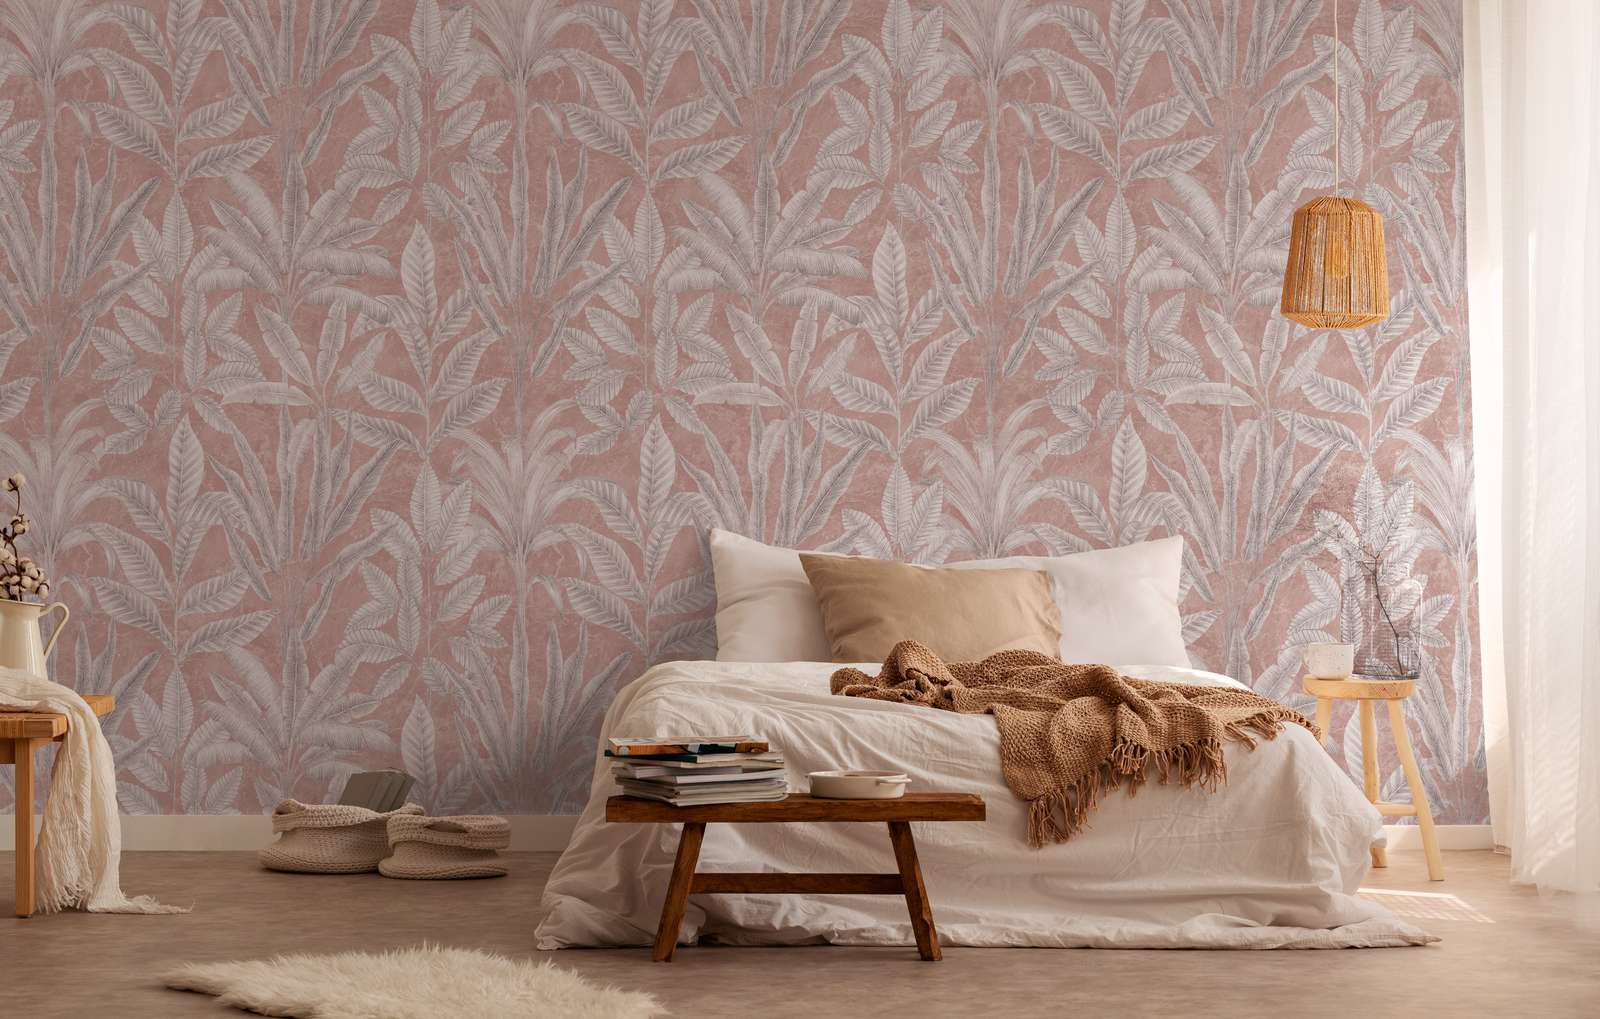             Papel pintado no tejido con grandes hojas en colores claros - rosa, gris, blanco
        